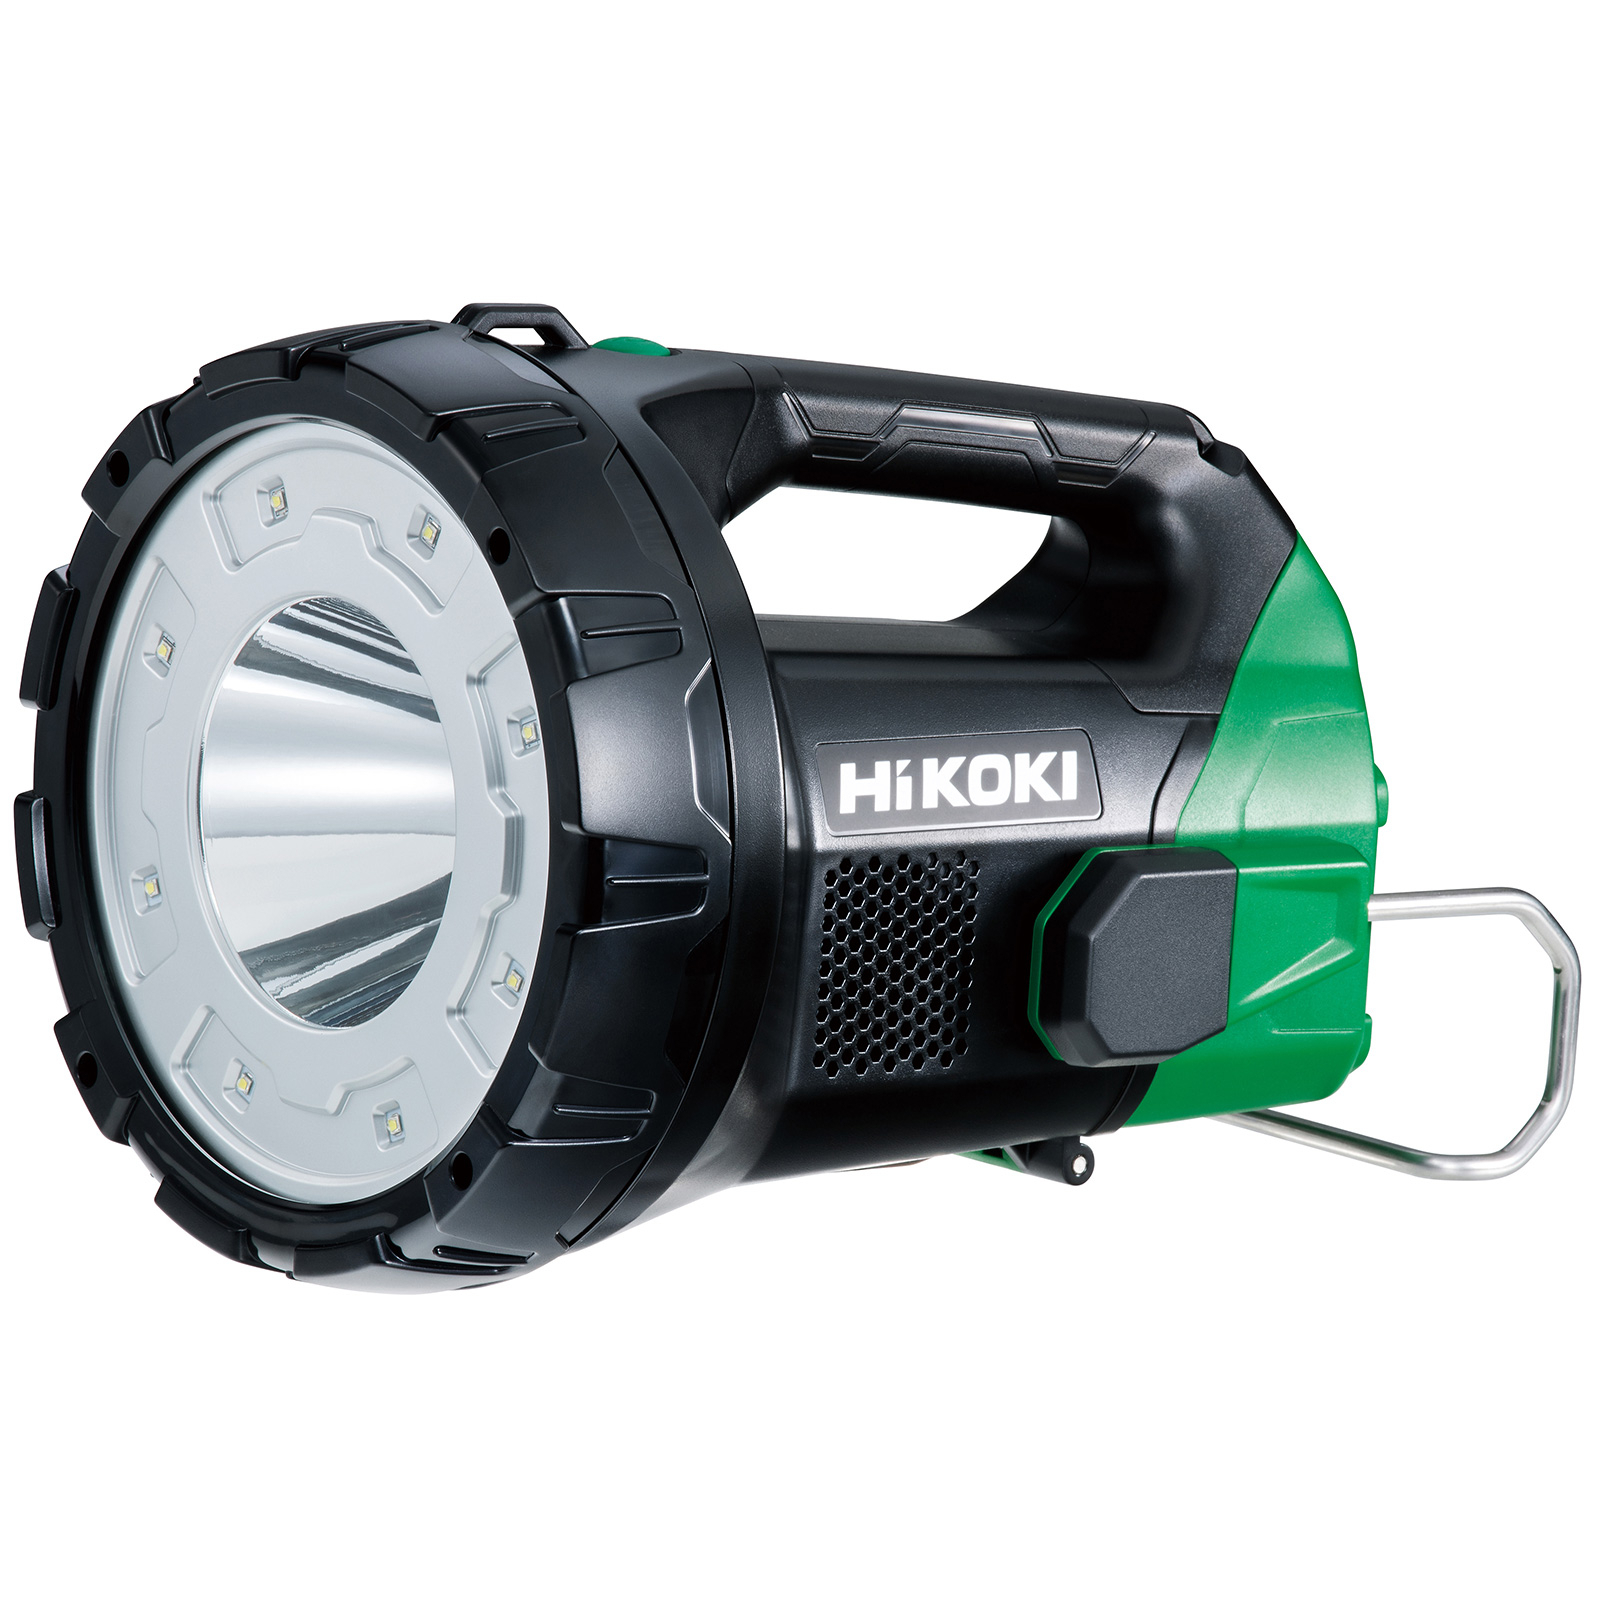 HiKOKI 18V Search Light (tool only) UB18DA(W4Z)